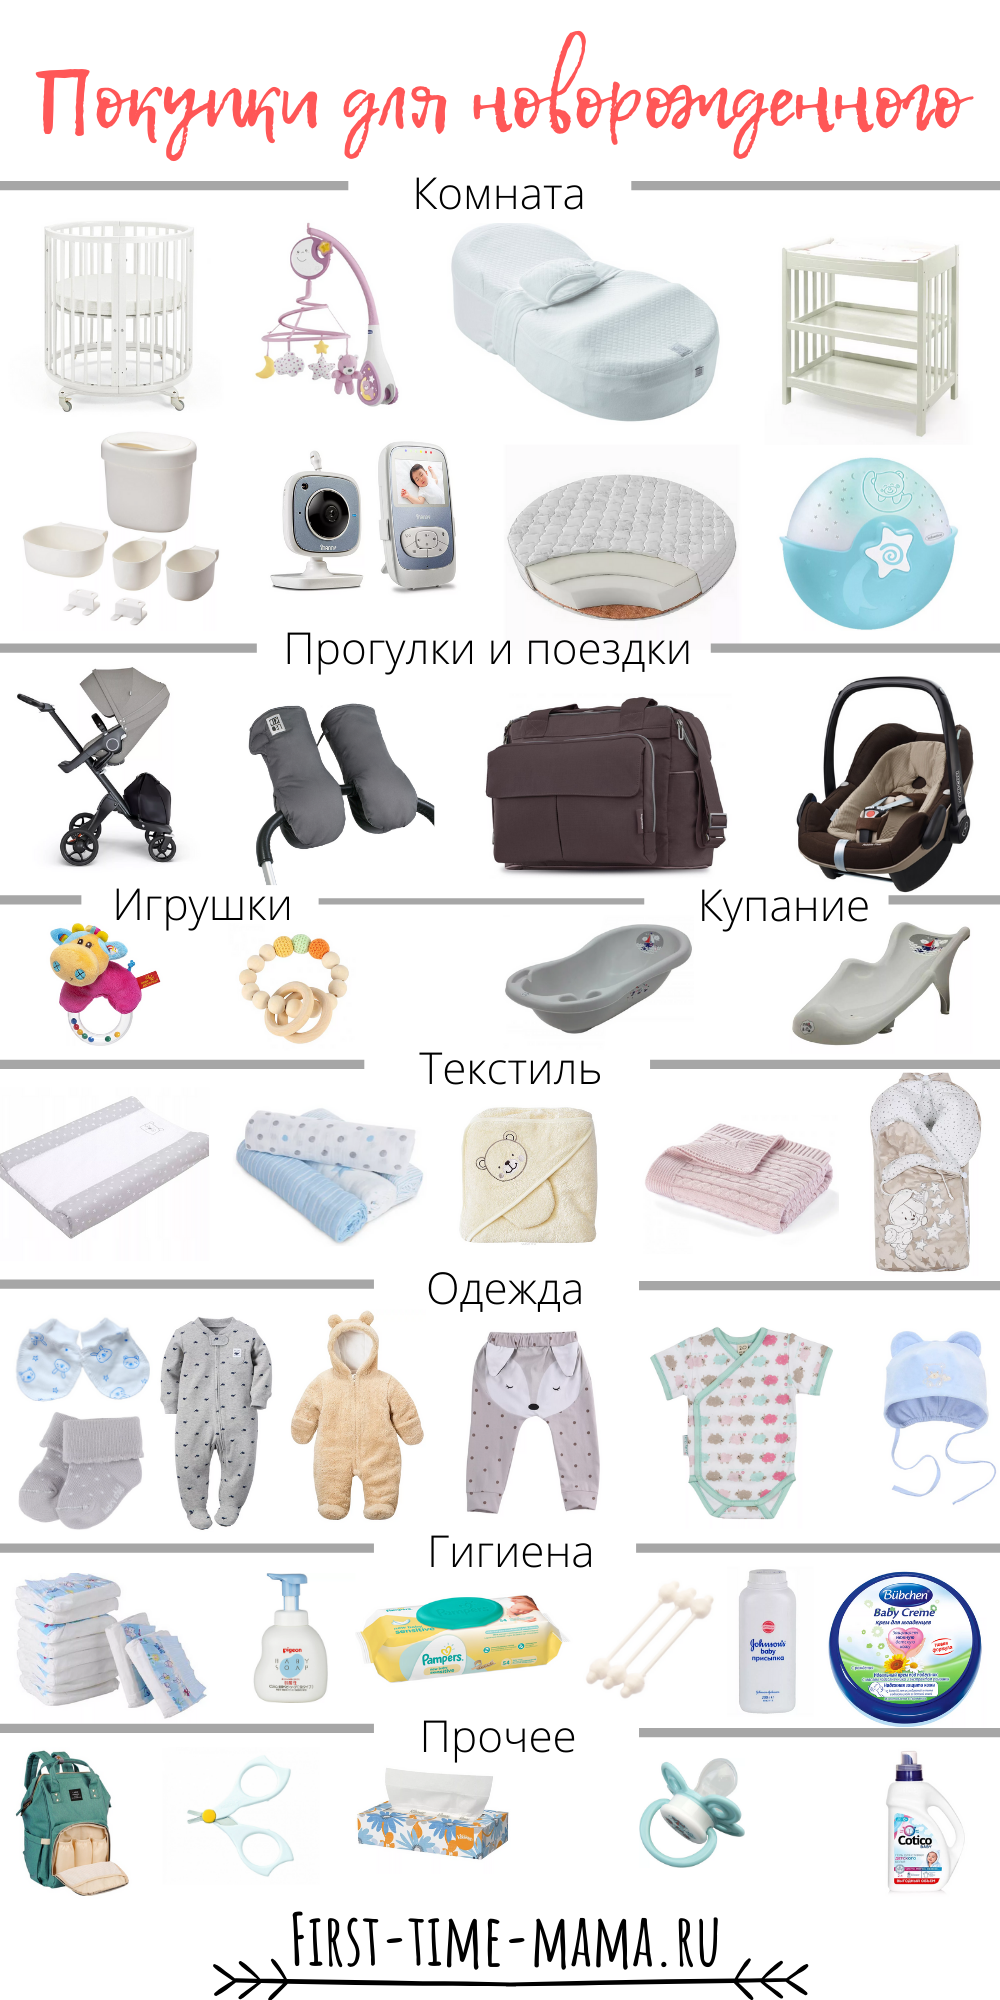 Список покупок для новорожденного на первое. Вещи первой необходимости для новорожденного после роддома. Одежда для новорожденного список необходимого. Список вещей для новорожденного. Список однждыдля новорожденного.